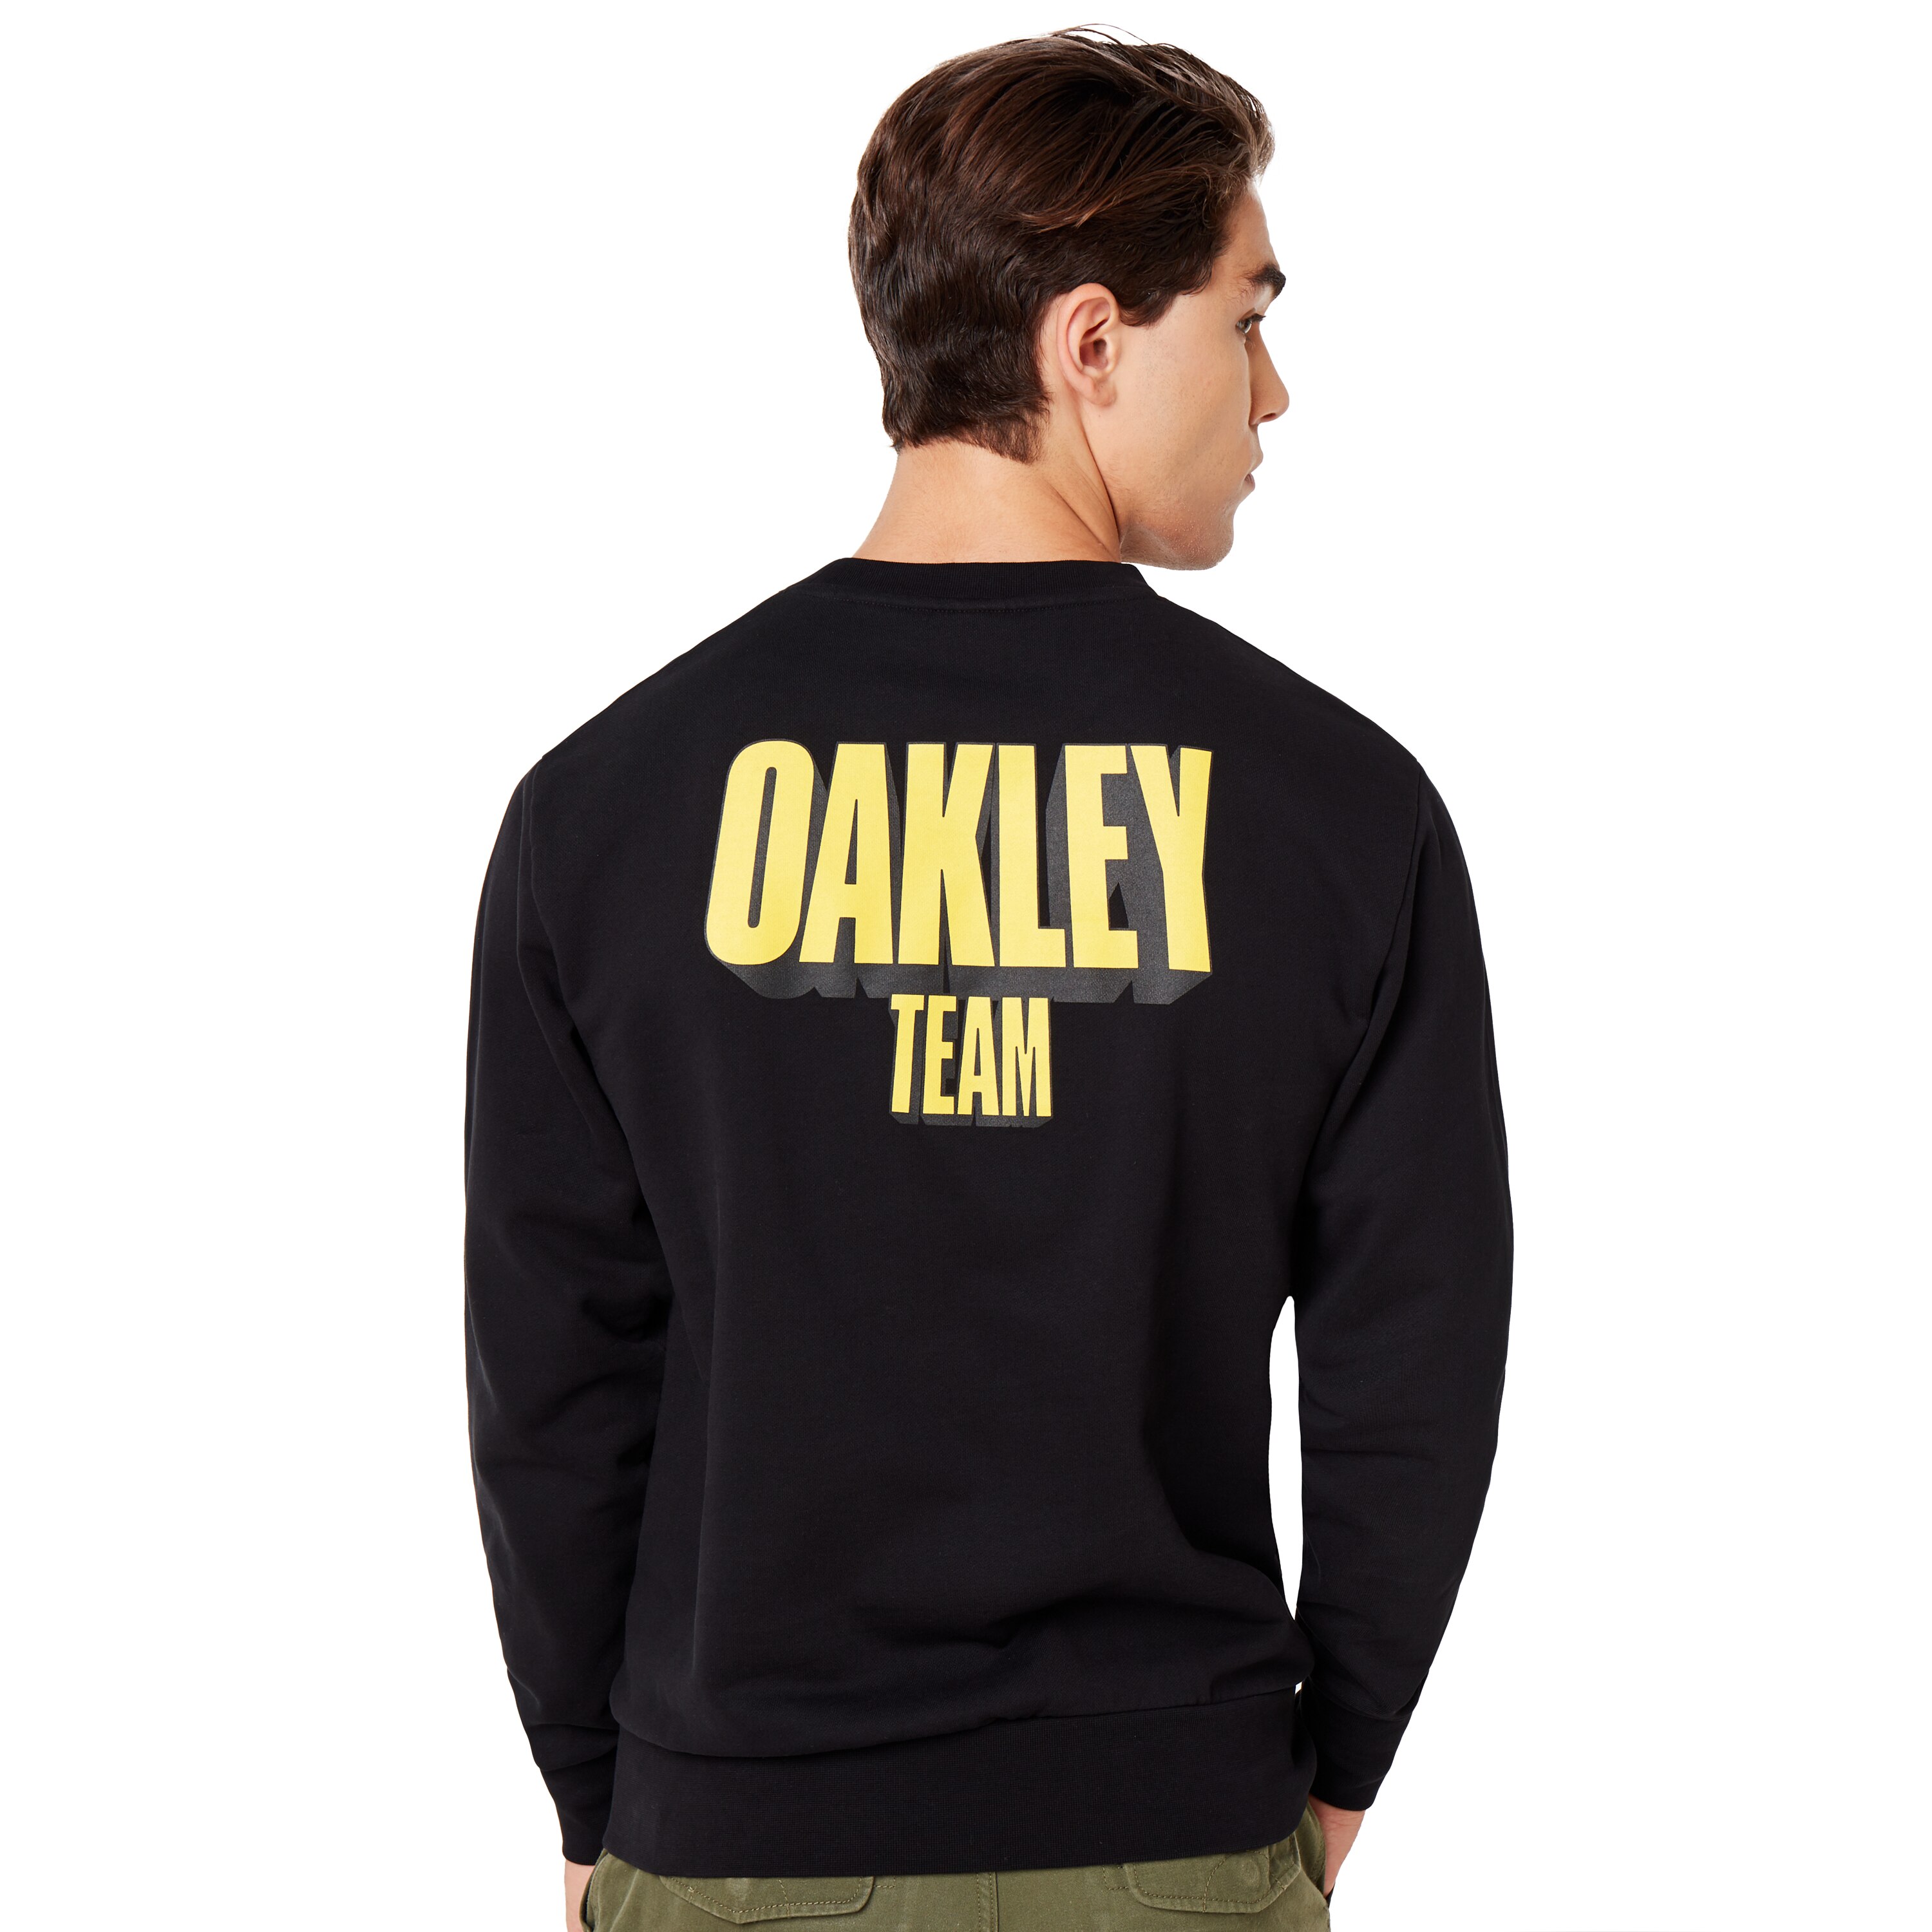 Oakley Oakley Team Crew Neck - Blackout 